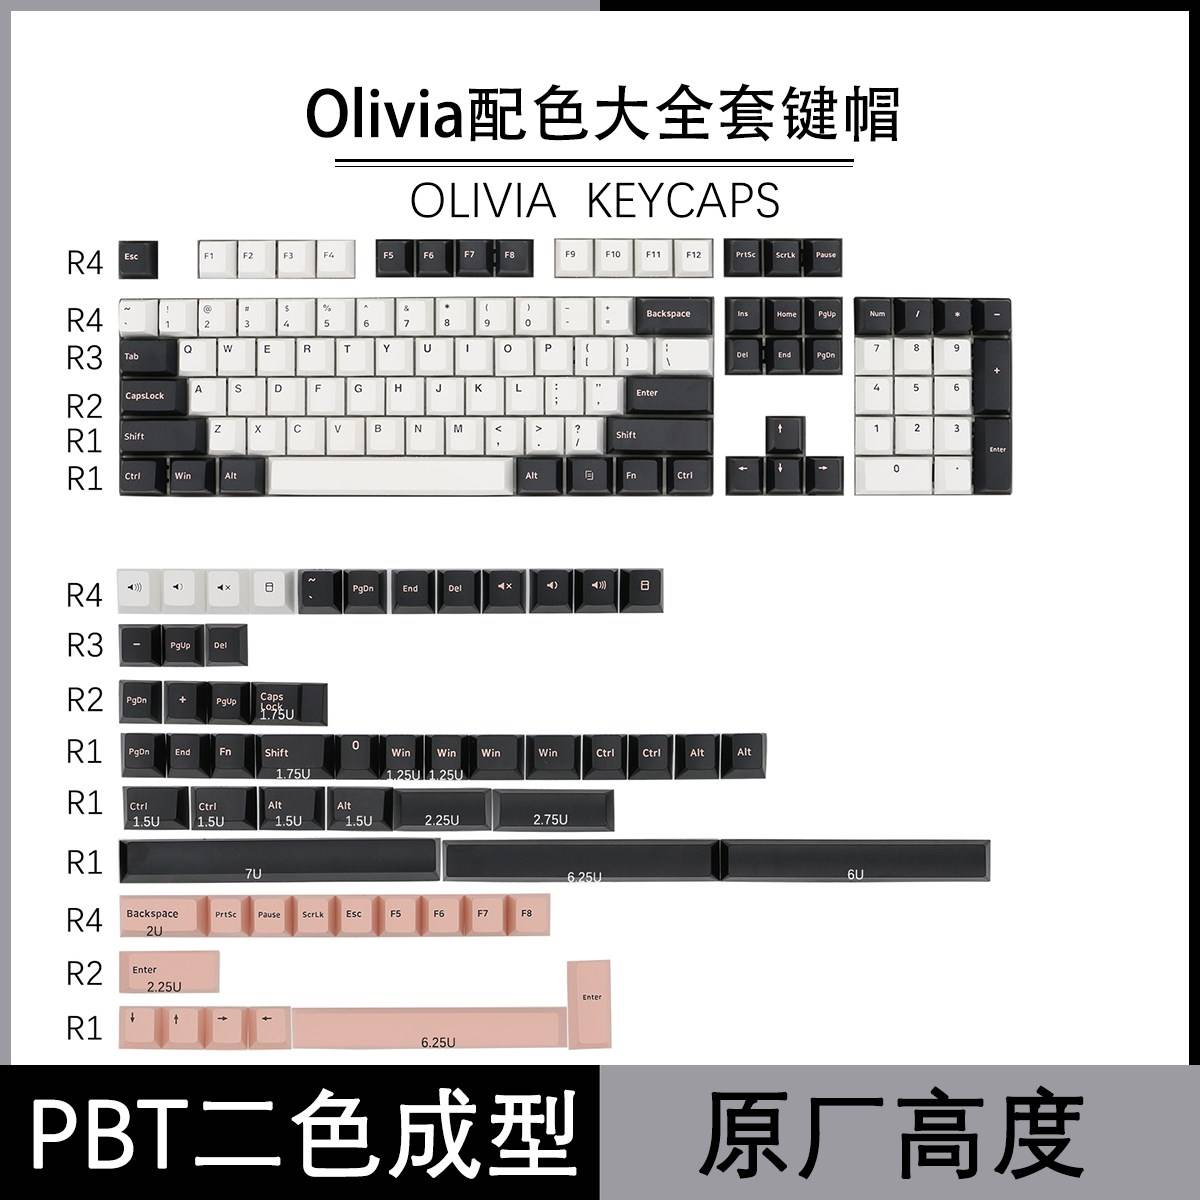 议价捕获者 GMK Olivia keycaps 二色成型大全套PBT晚樱键帽 机械